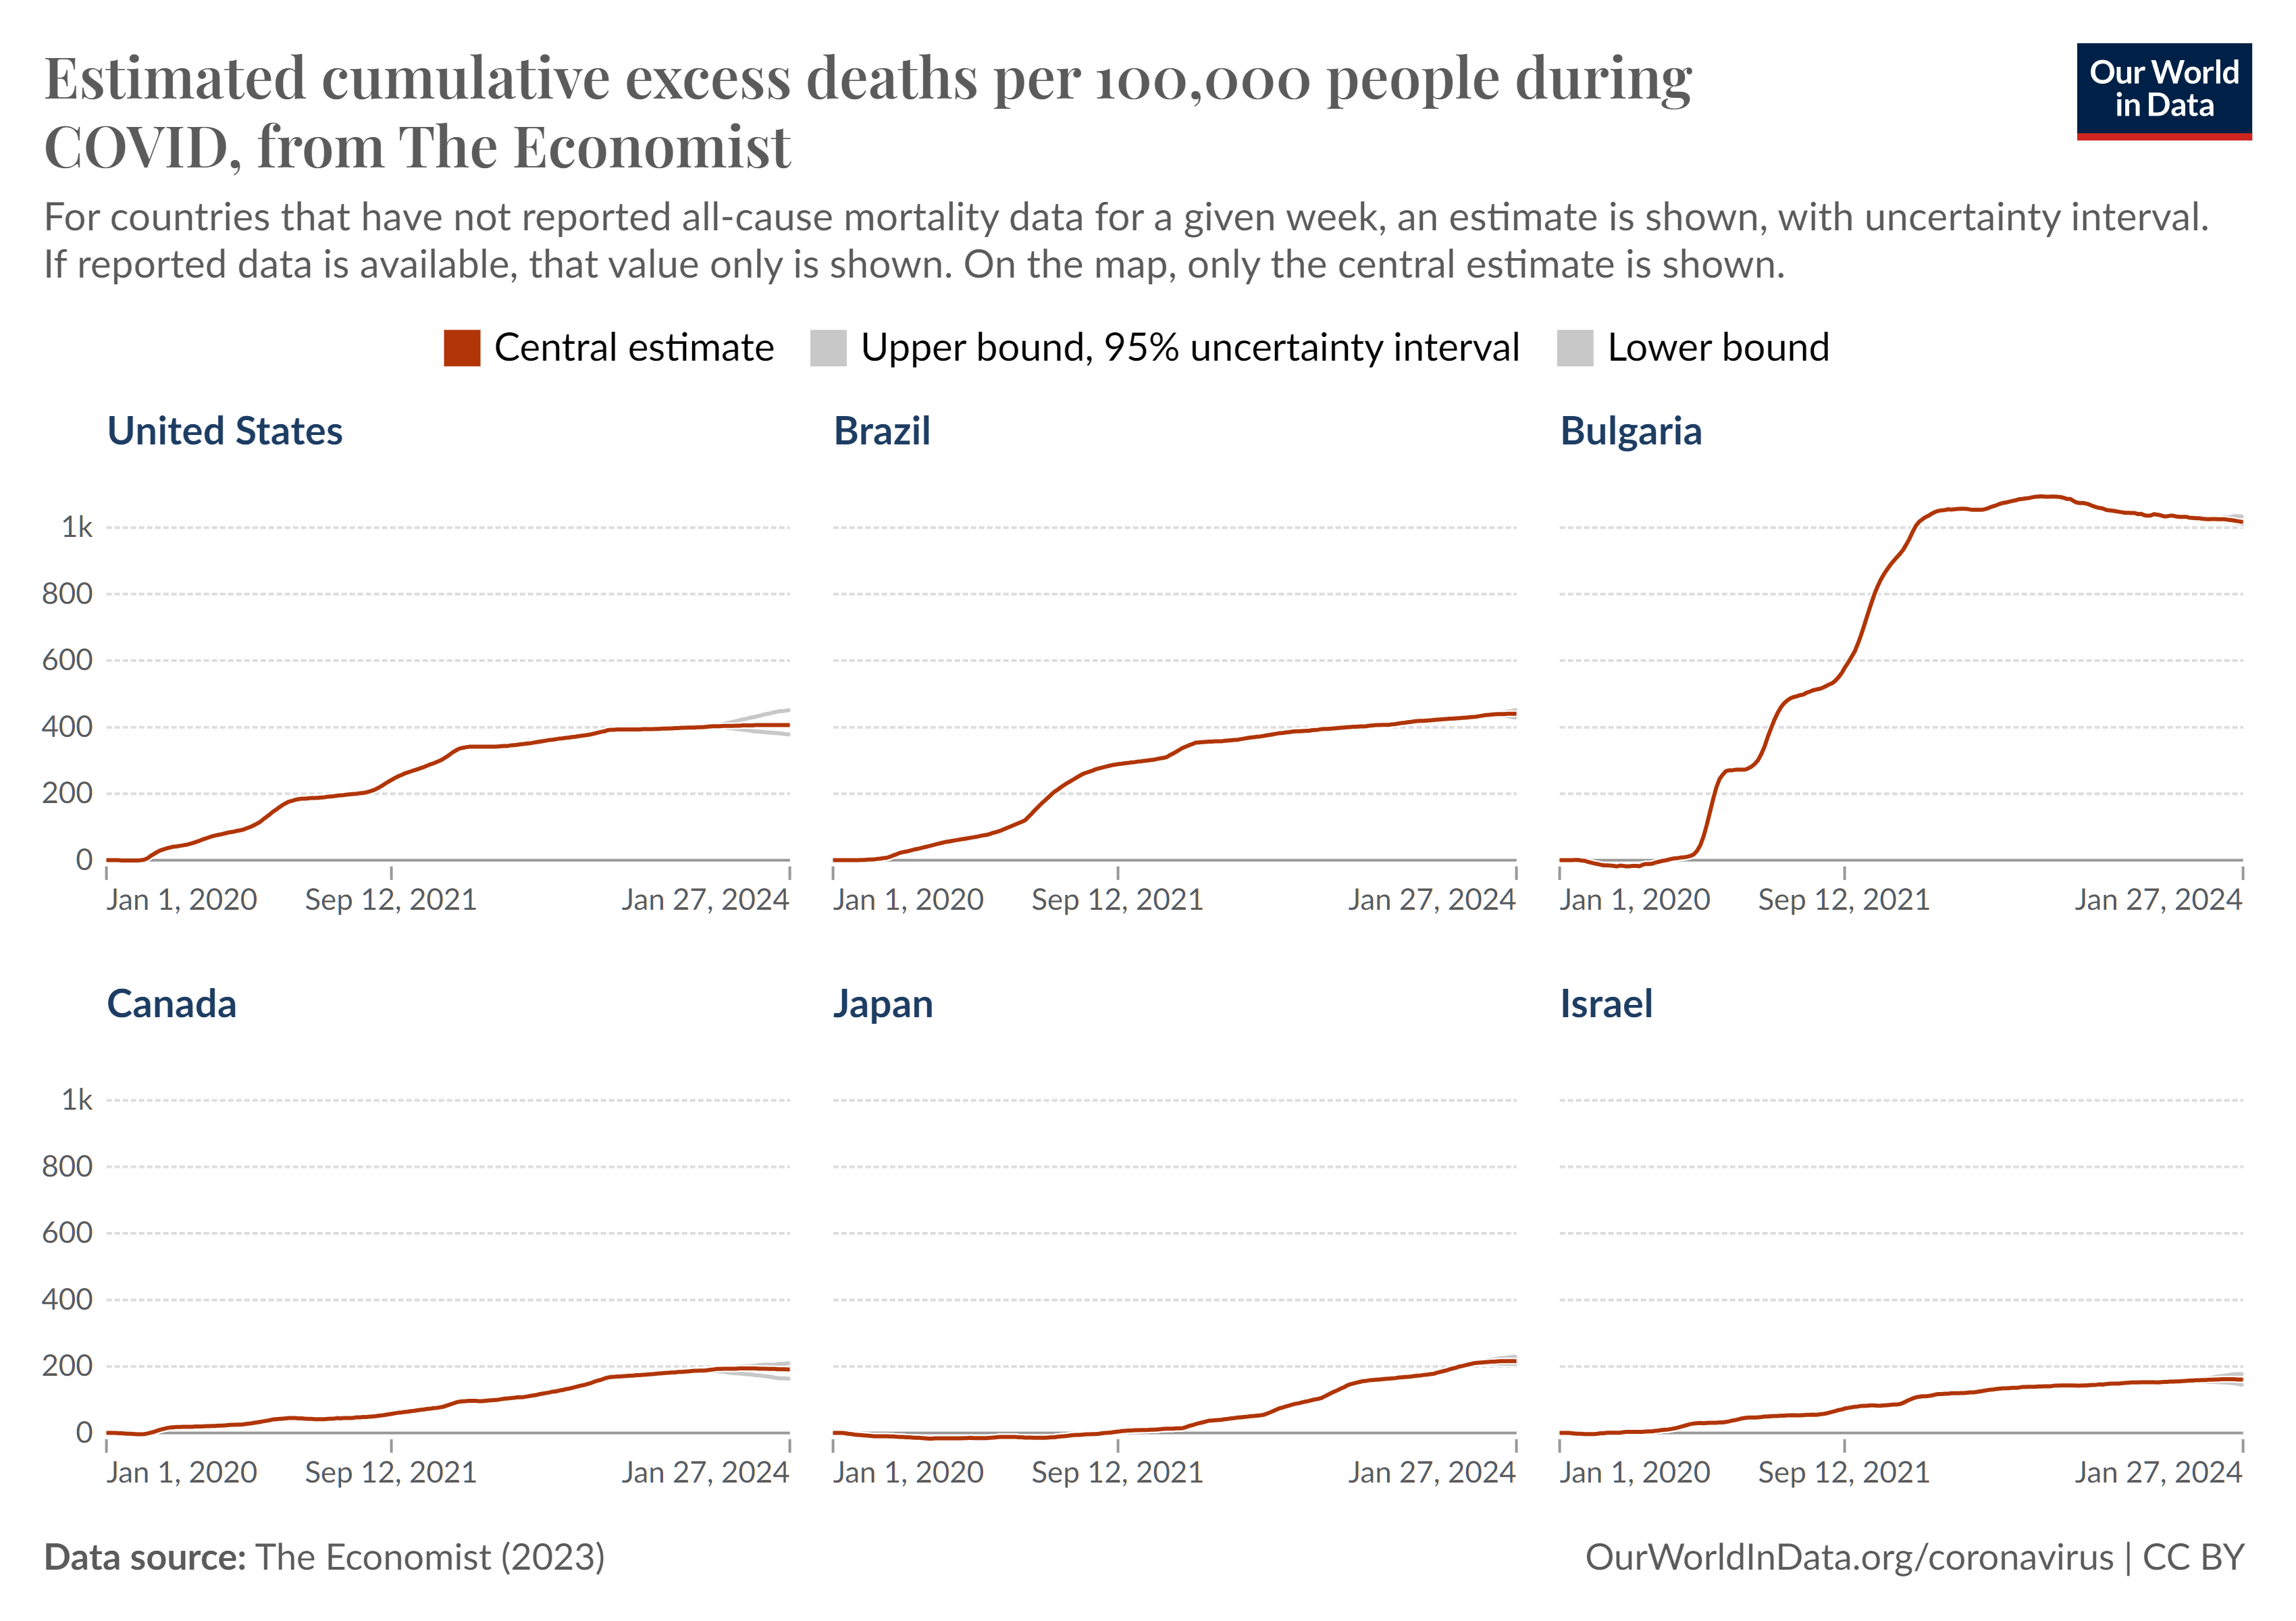 excess-deaths-cumulative-per-100k-economist.png